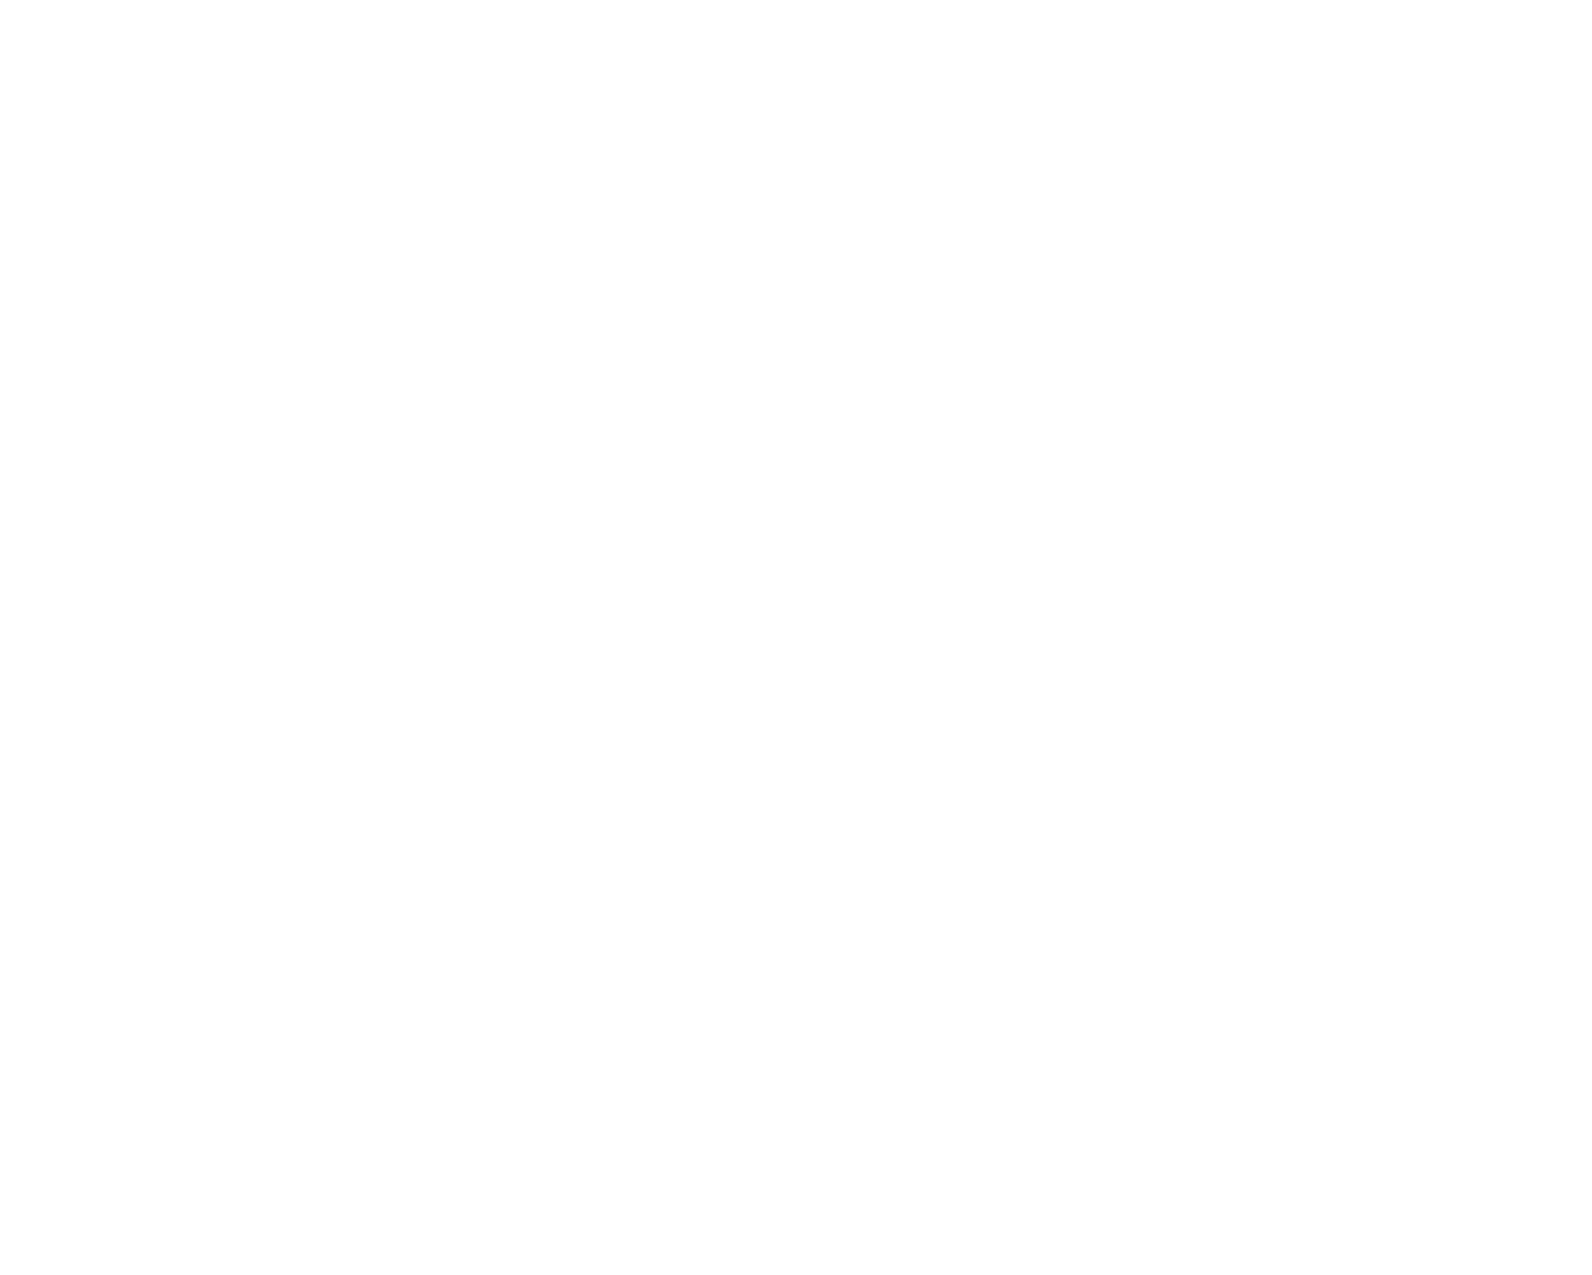 Waters Corporation logo pour fonds sombres (PNG transparent)